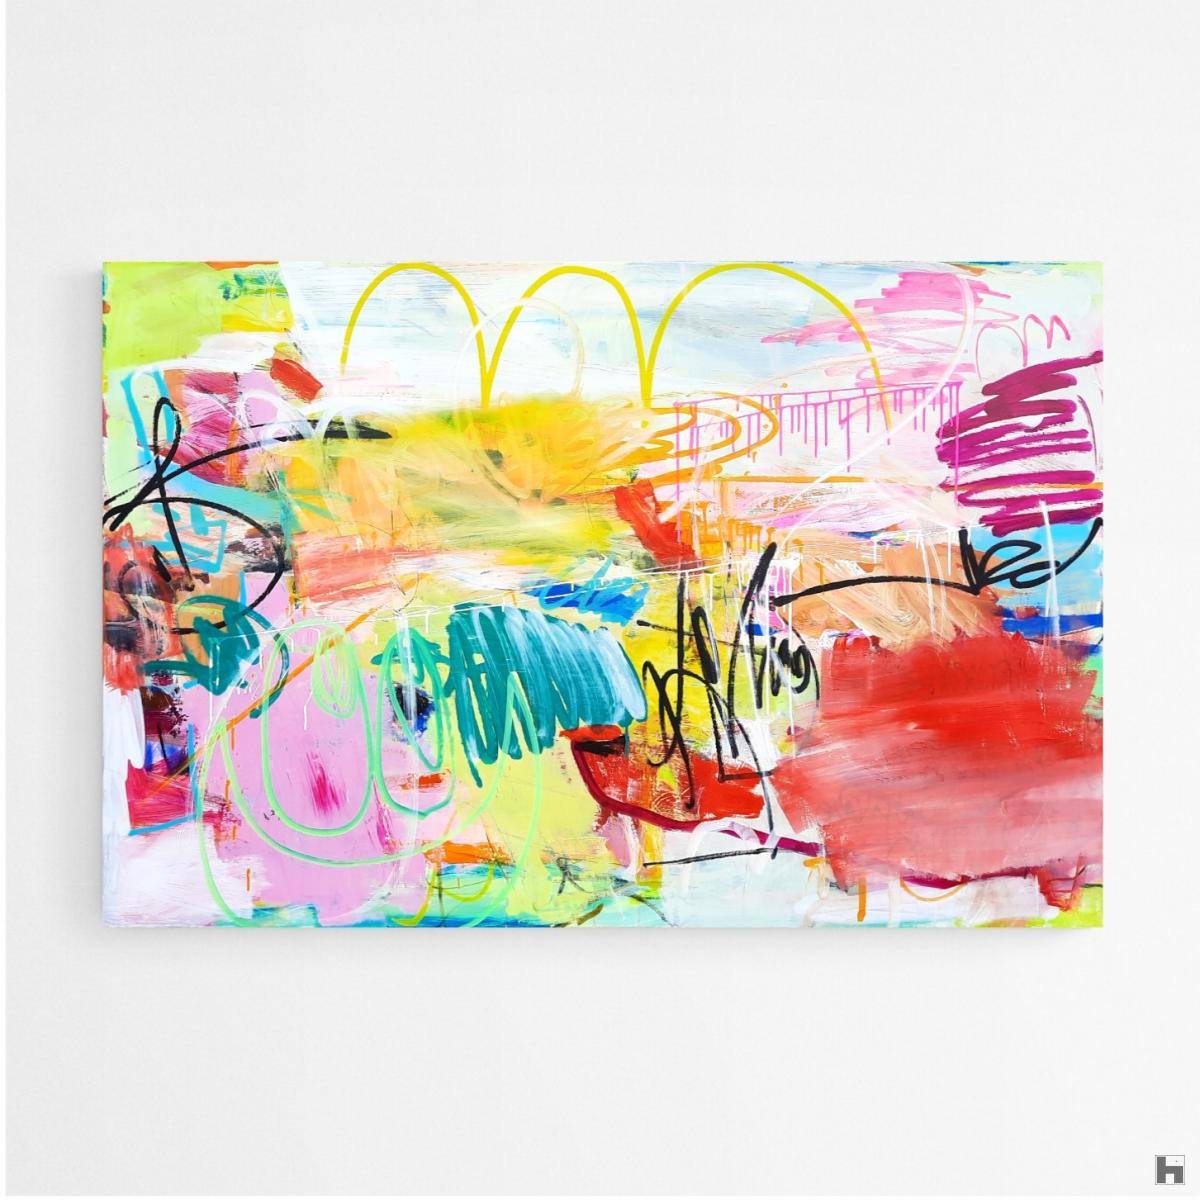 Toile 150x100x2cm, acrylique, pastels, marqueurs, encres. Art abstrait, contemporain. Oeuvre originale, Roxane Malu, 2022